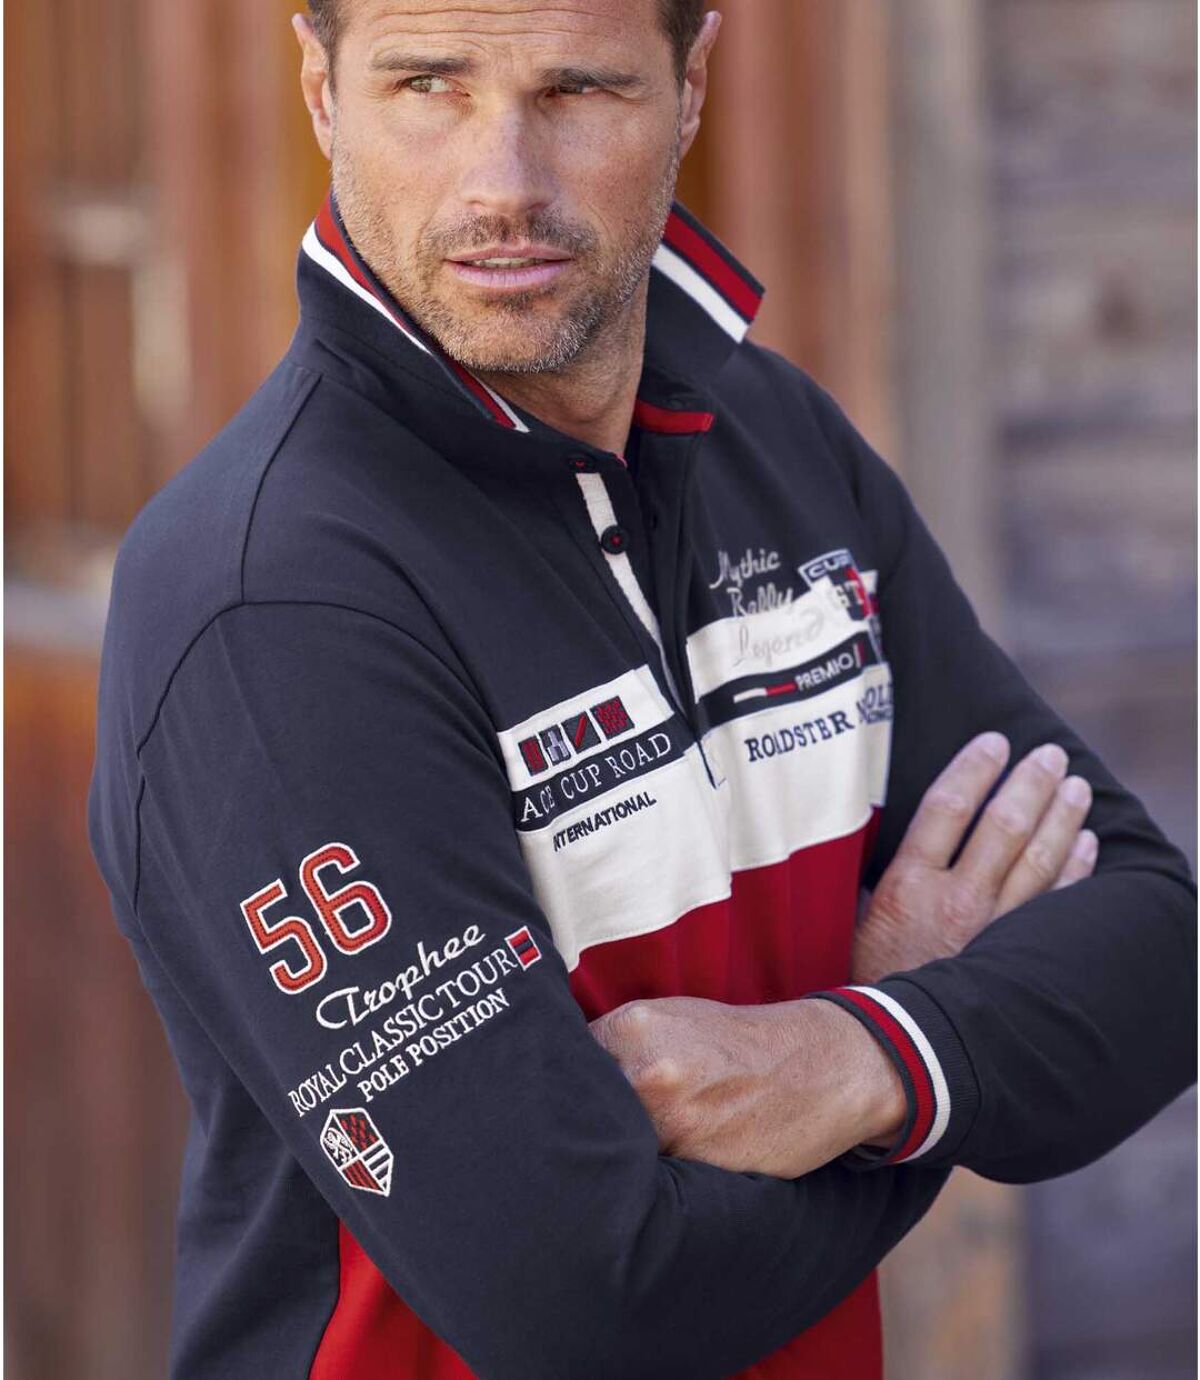 Men's Sporty Polo Shirt - Navy Red White Atlas For Men